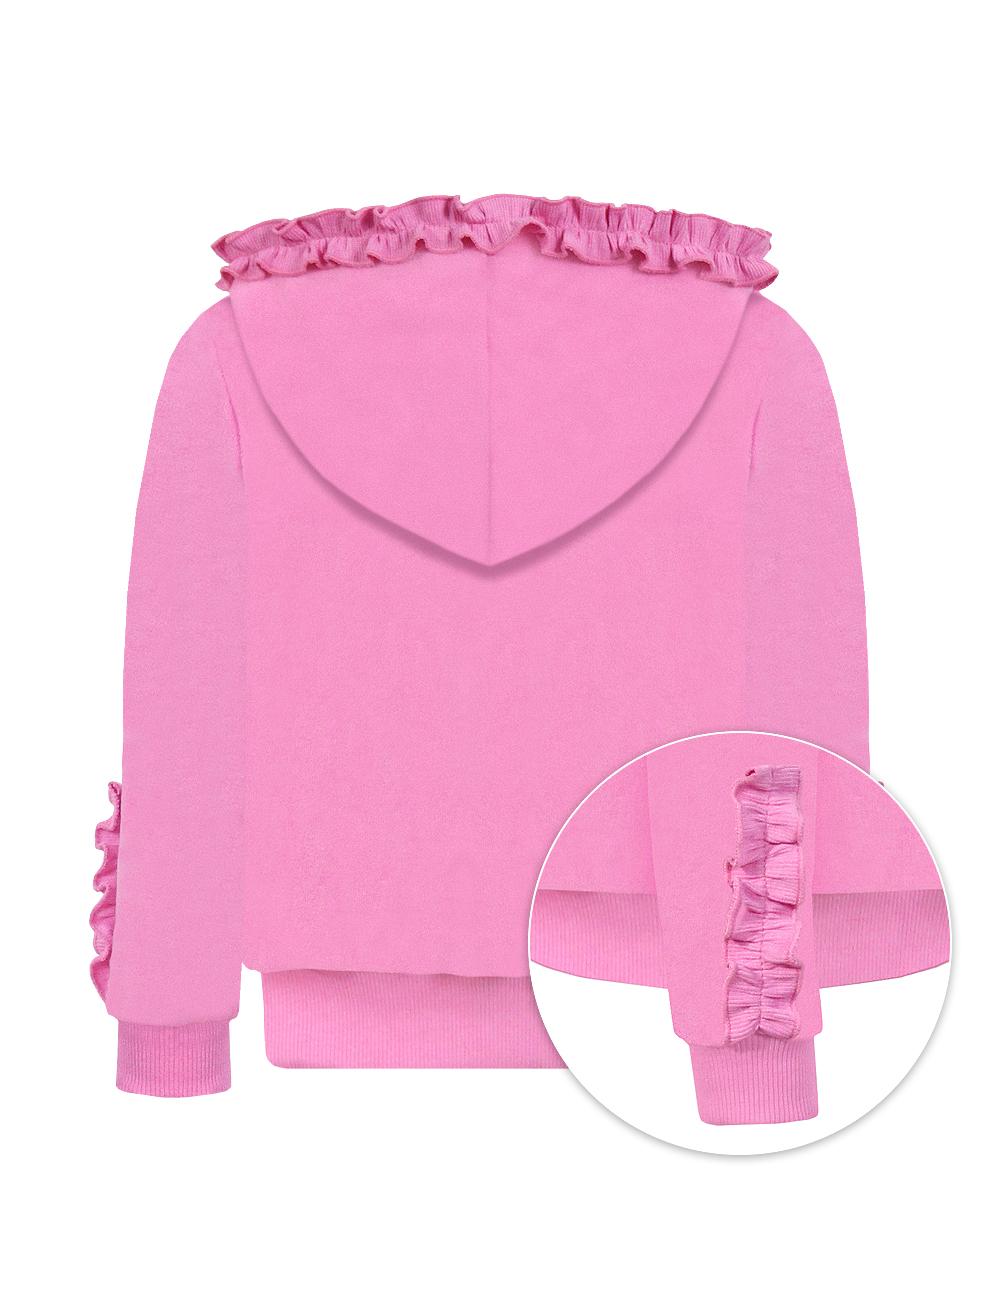 Детский велюровый костюм для девочки KETMIN МИШКИ цв.Розовый